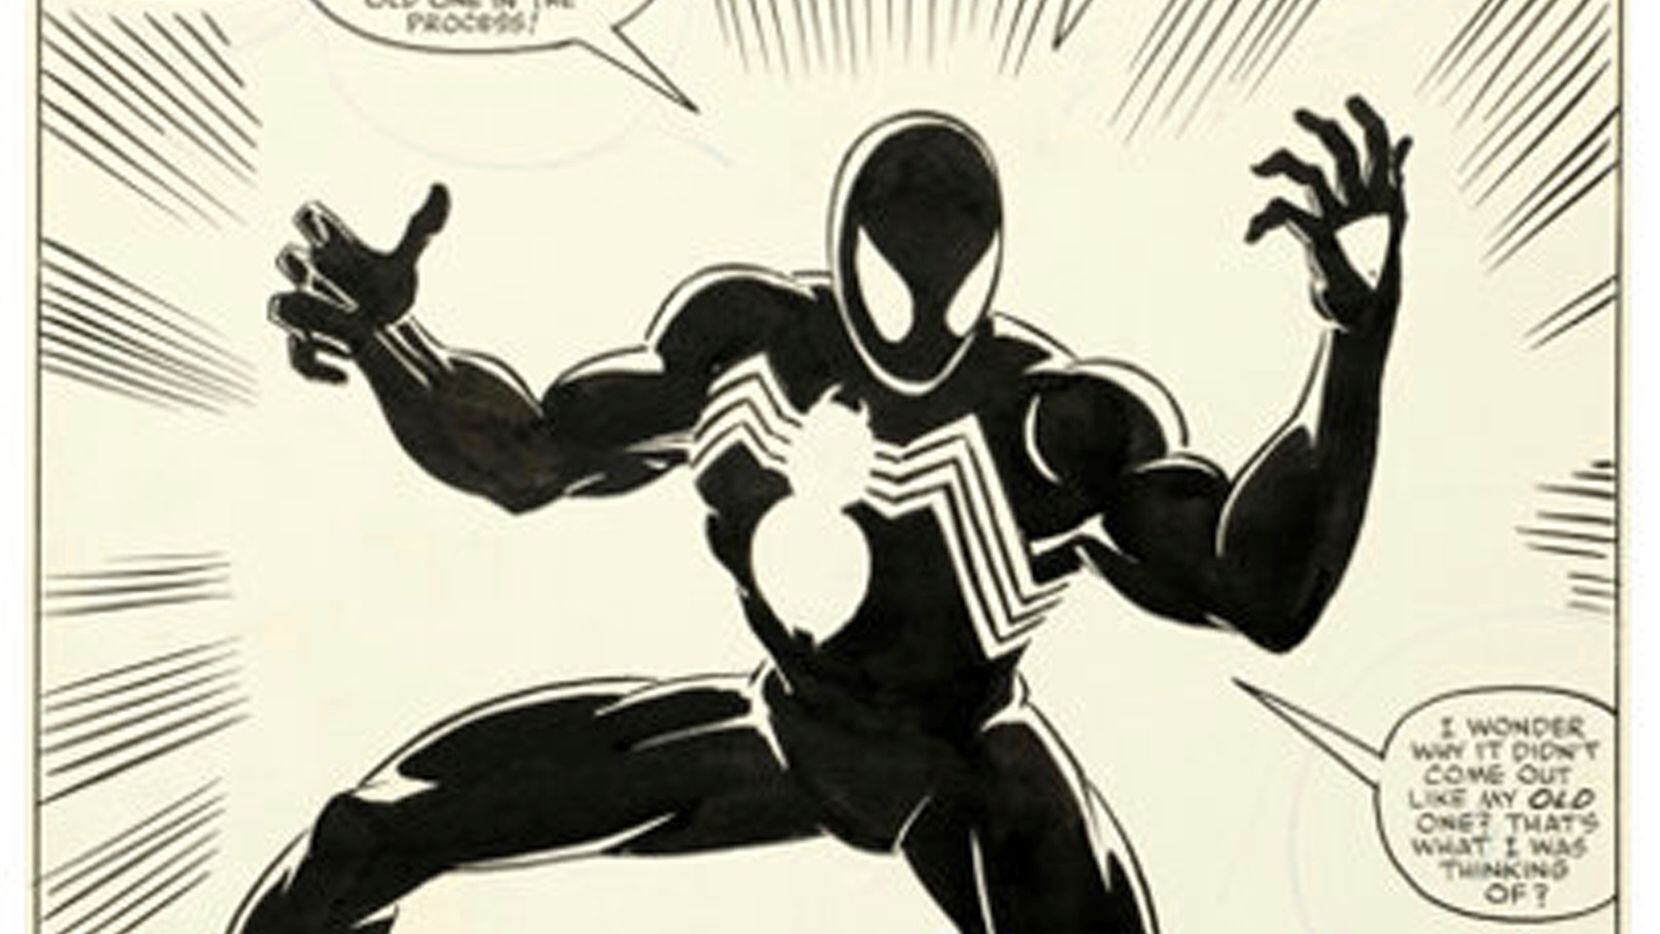 Esta imagen cortesía de Heritage Auctions muestra la página 25 del cómic "Secret Wars número 8", de Marvel Comics y publicado en 1984, en el que se cuenta la historia del origen de la ahora icónica vestimenta negra de Spider-Man. (Heritage Auctions vía AP)